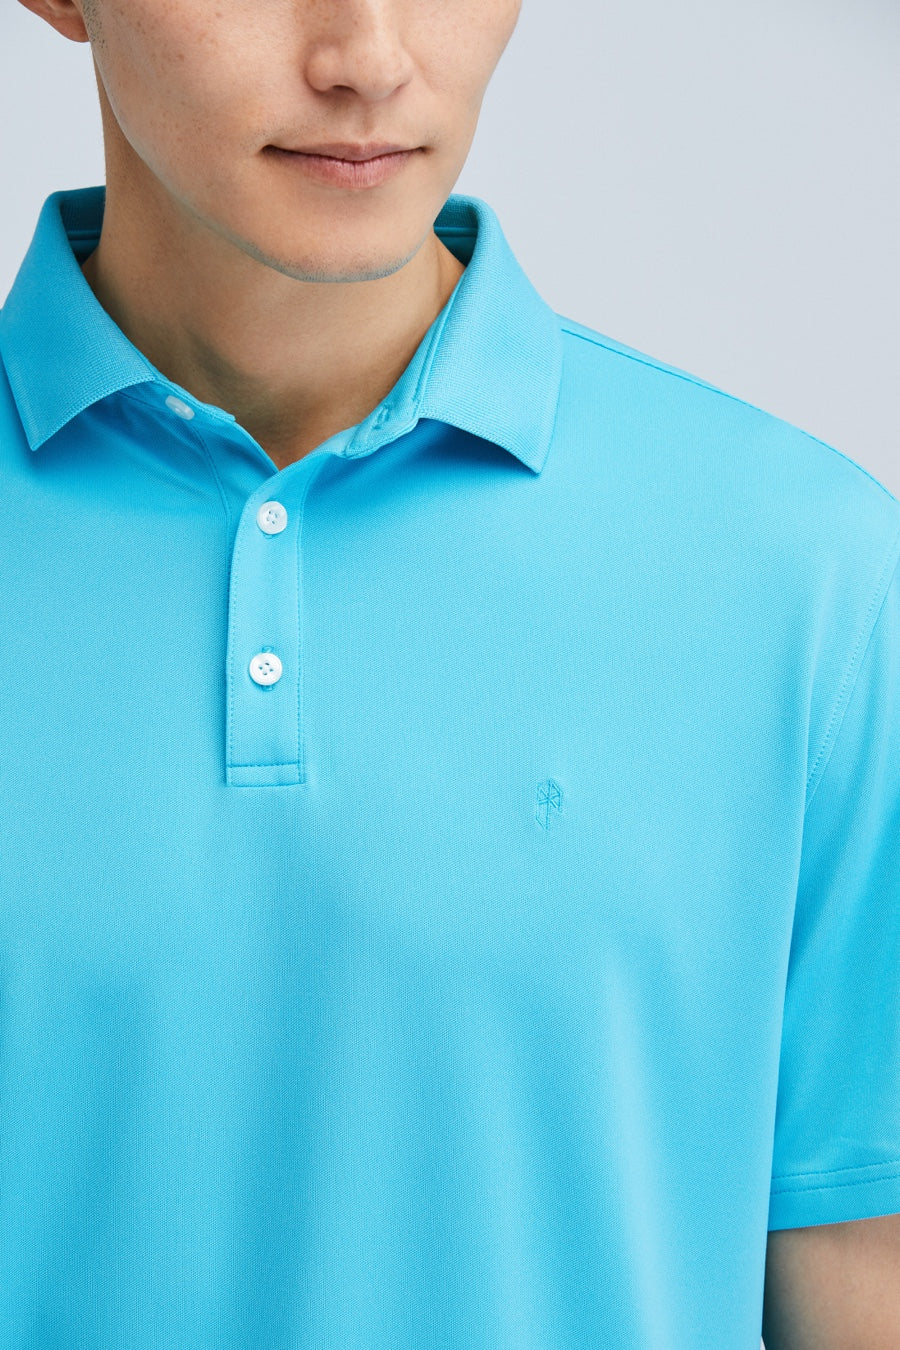 DannyShane Montreux Polo - Dust Blue Montreux Blue Active Lifestyle Polo Shirt / X-Large